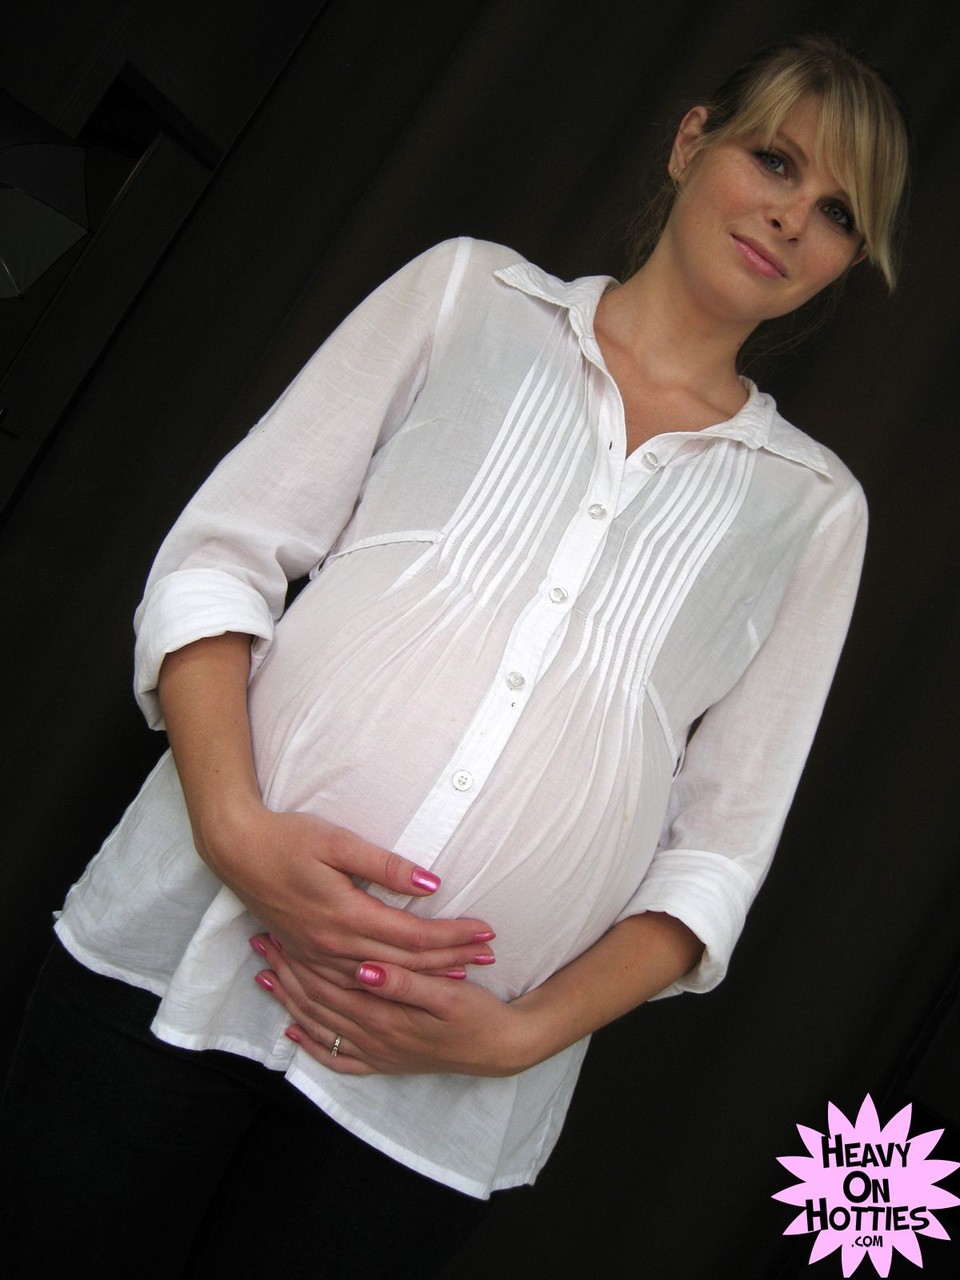 Sweet pregnant Ukrainian Wiska milks her big tits and gives a blowjob foto porno #428635789